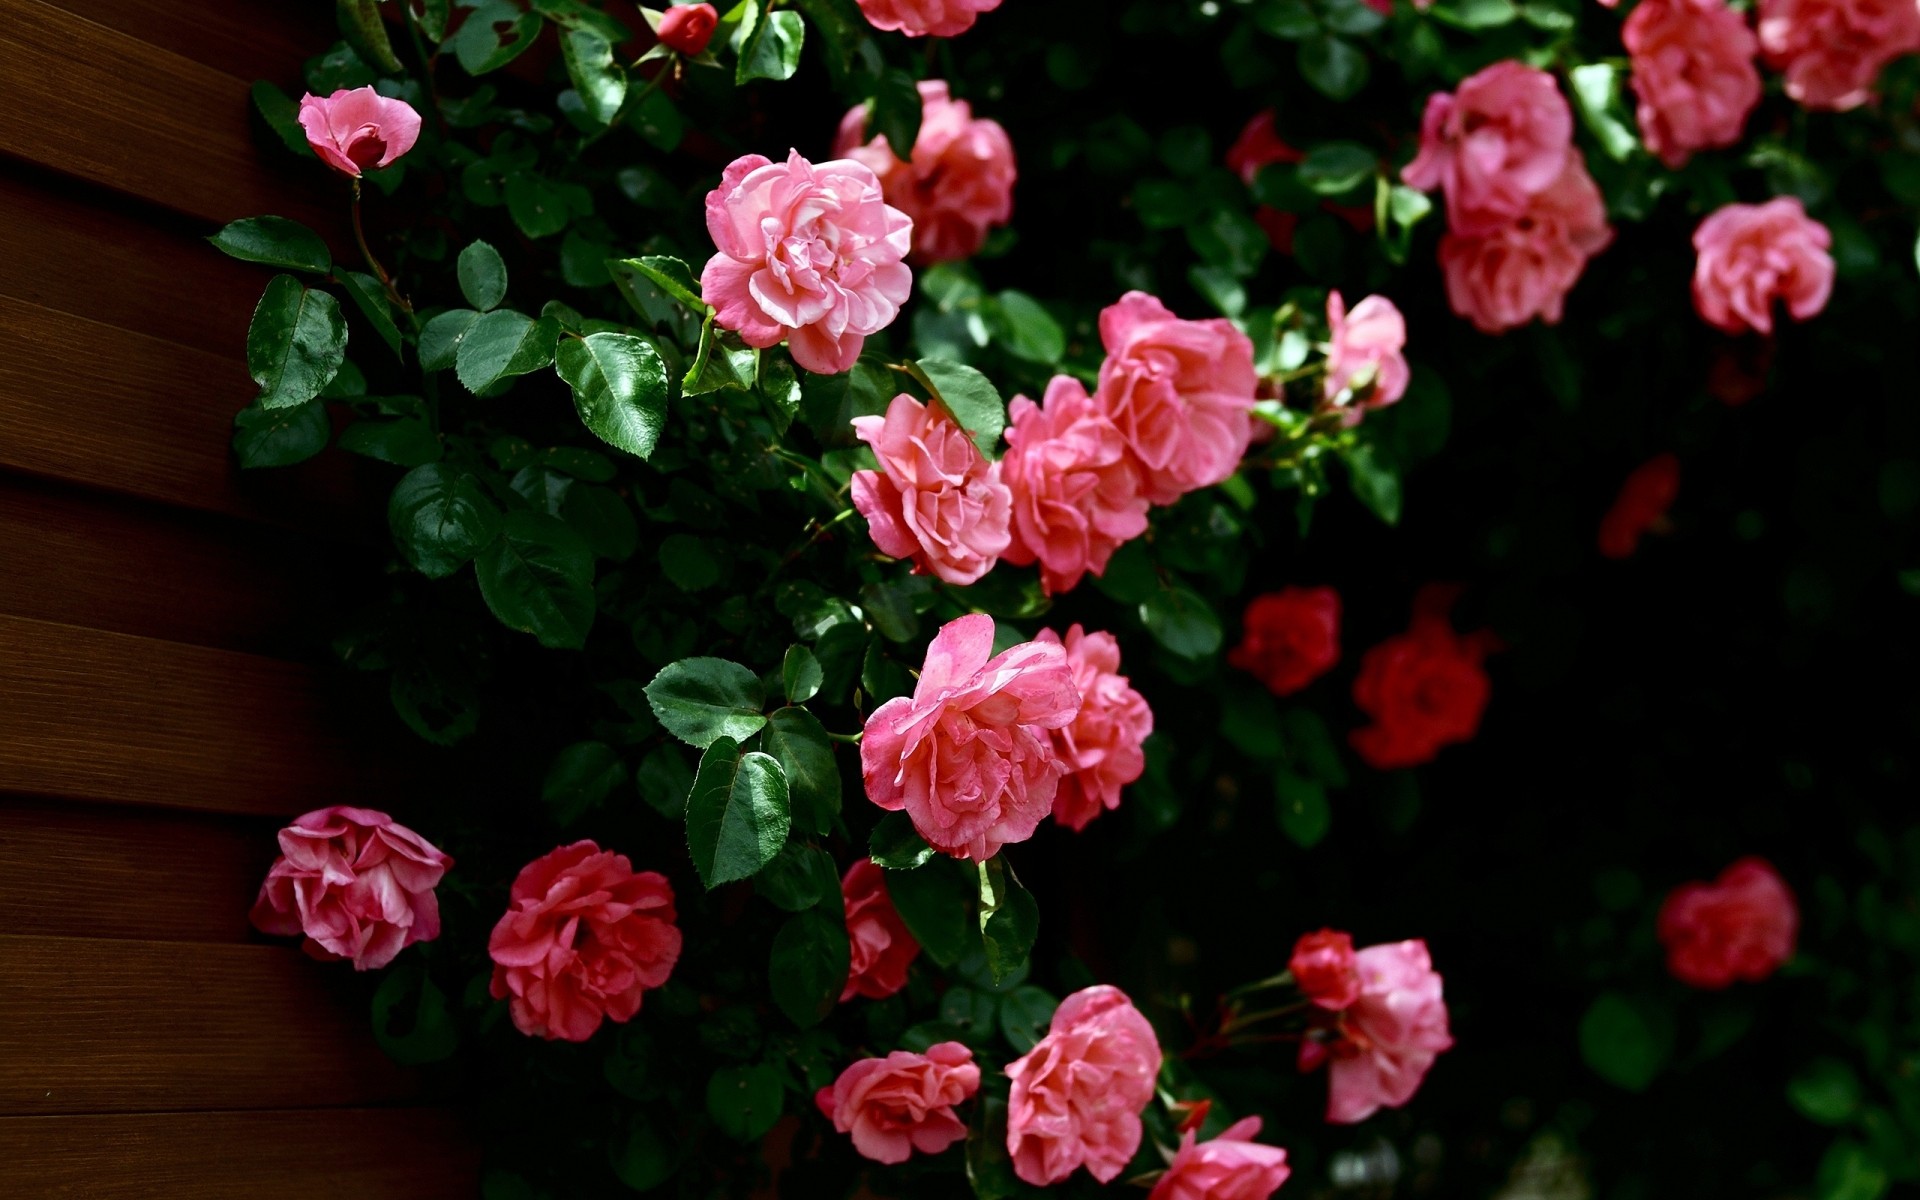 цветы цветок сад лист флора природа роза лето цветочные блюминг лепесток рост украшения цвет